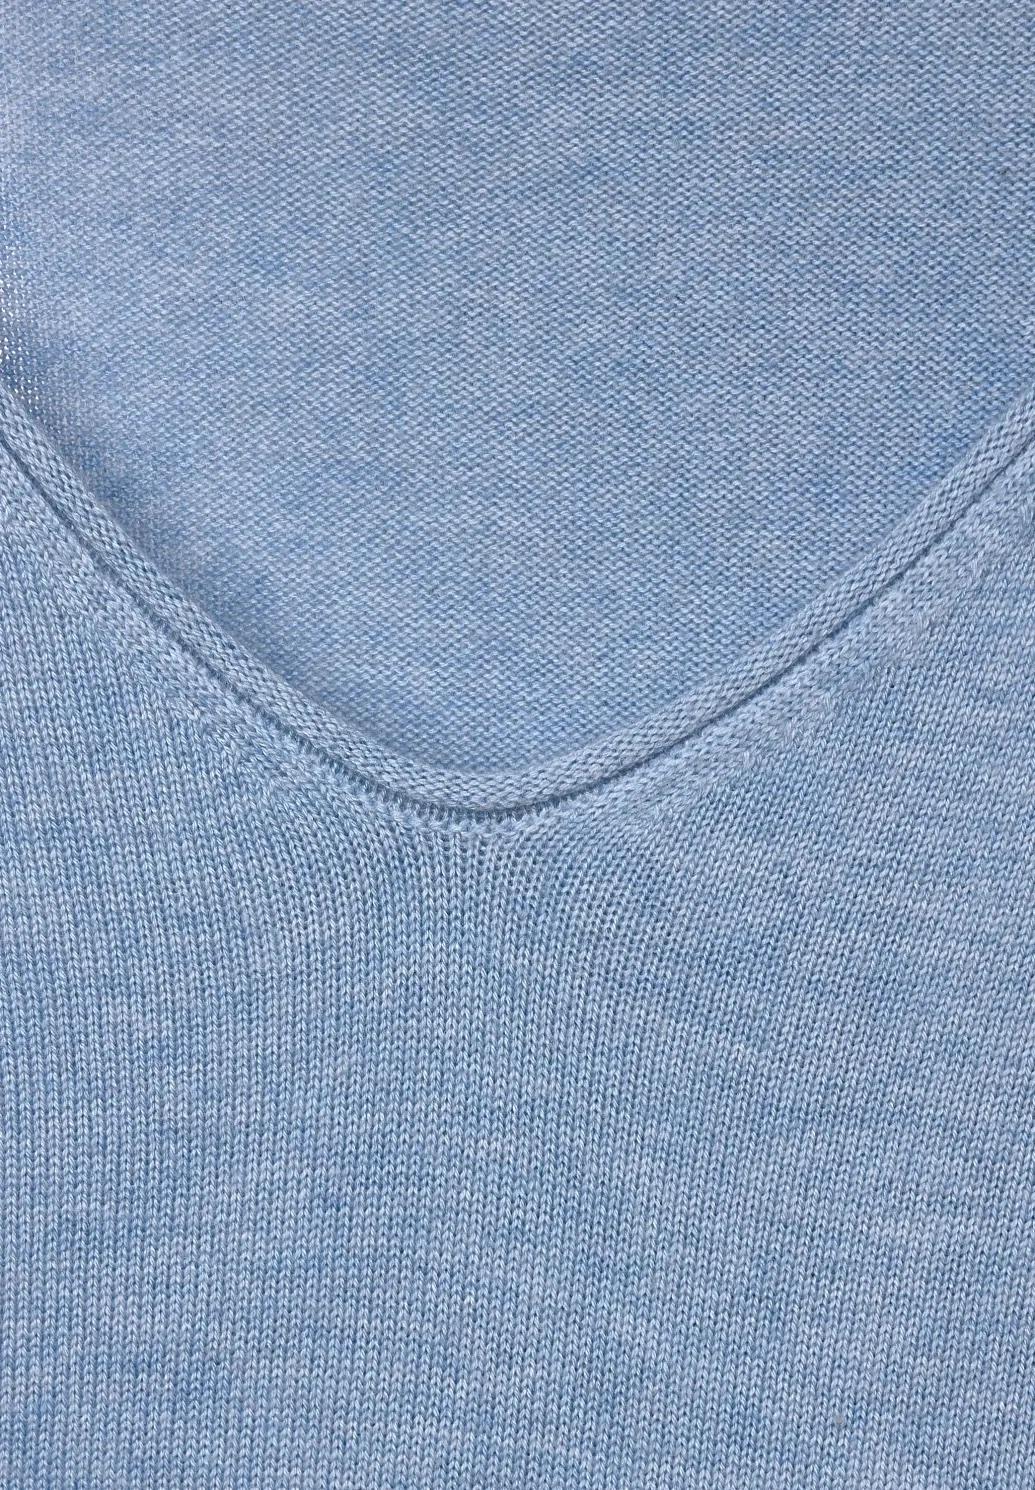 CECIL jemný pletený sveter, sv. mod